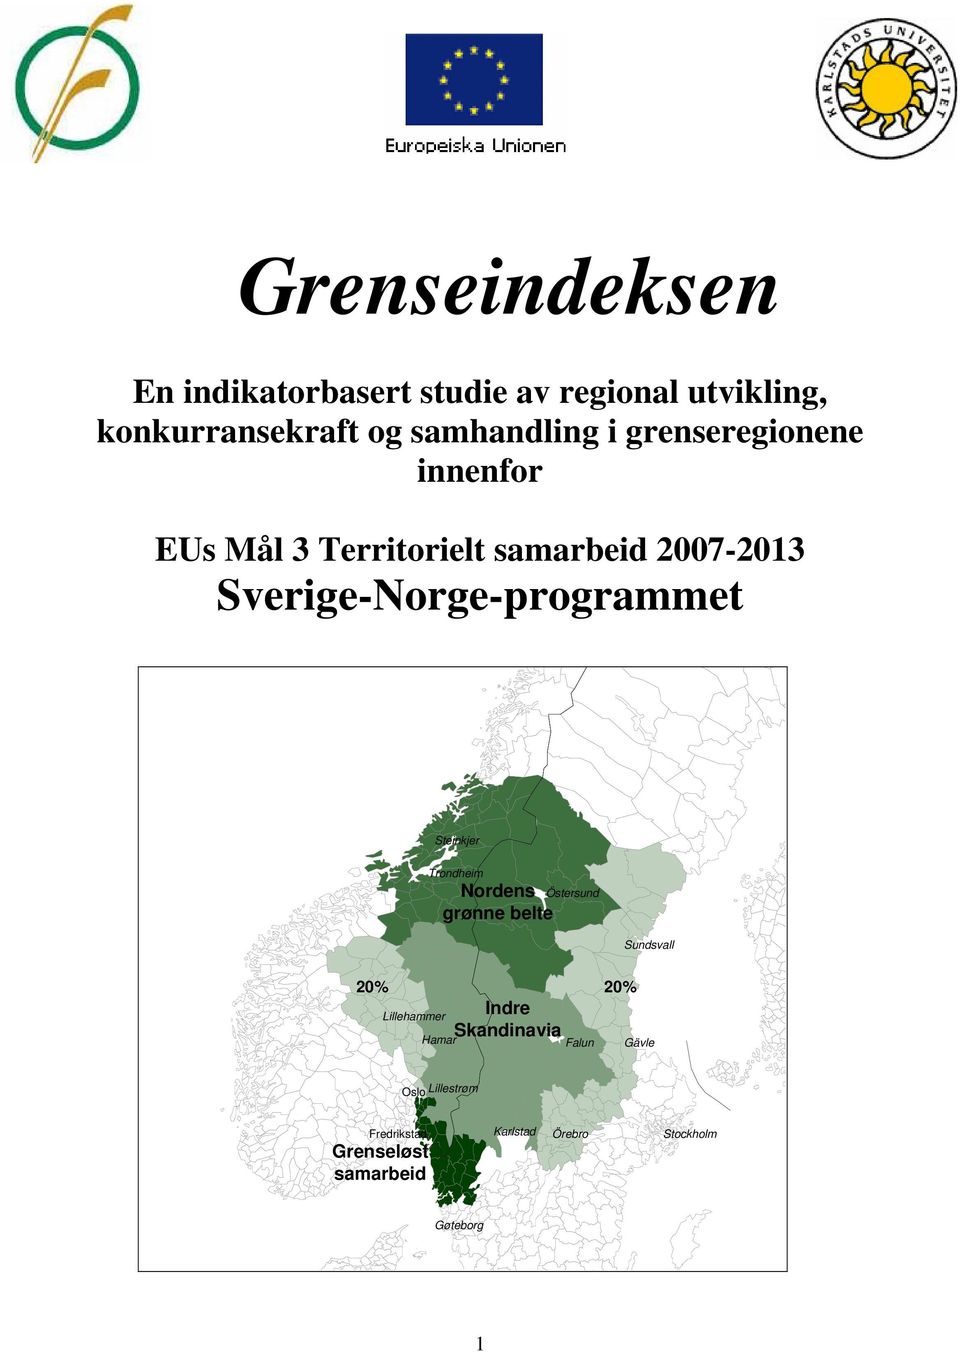 Steinkjer Trondheim Nordens grønne belte Östersund Sundsvall 20% 20% Indre Lillehammer Skandinavia